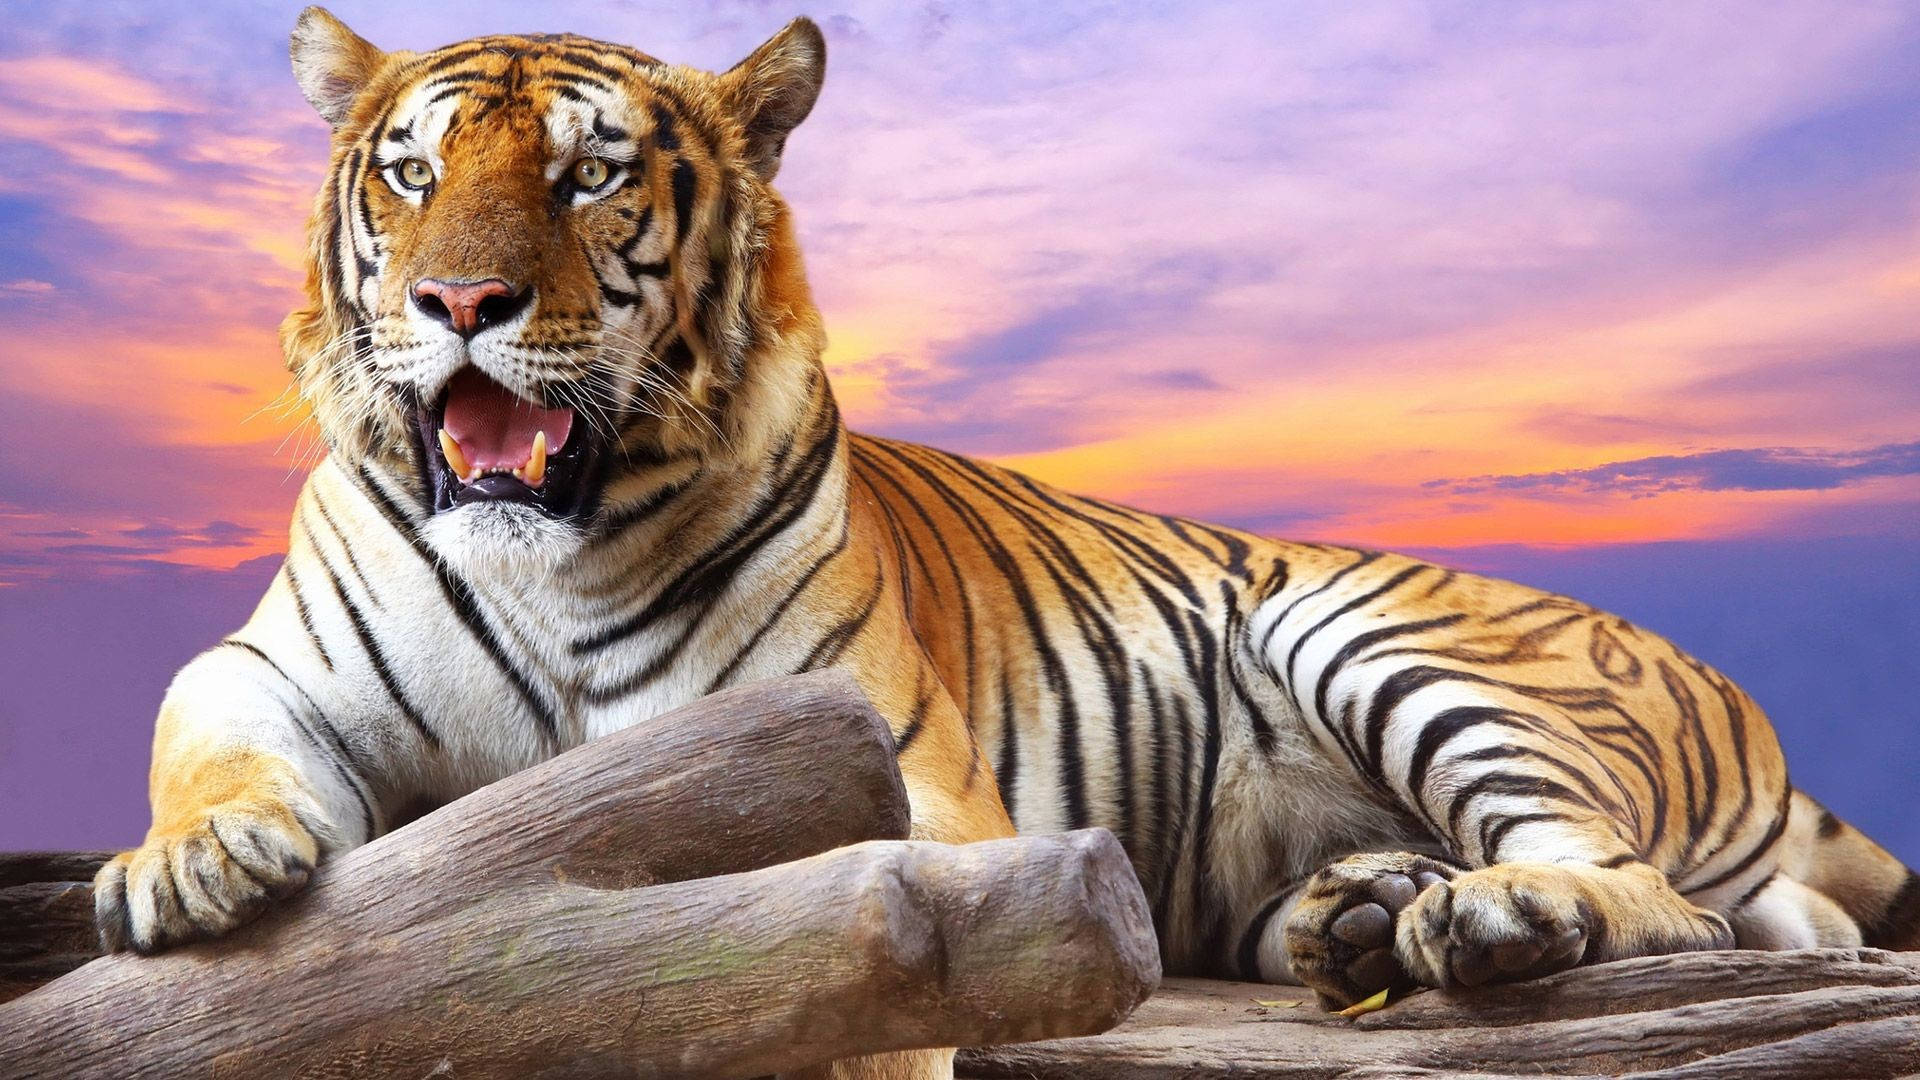 Tiger Sunset Background